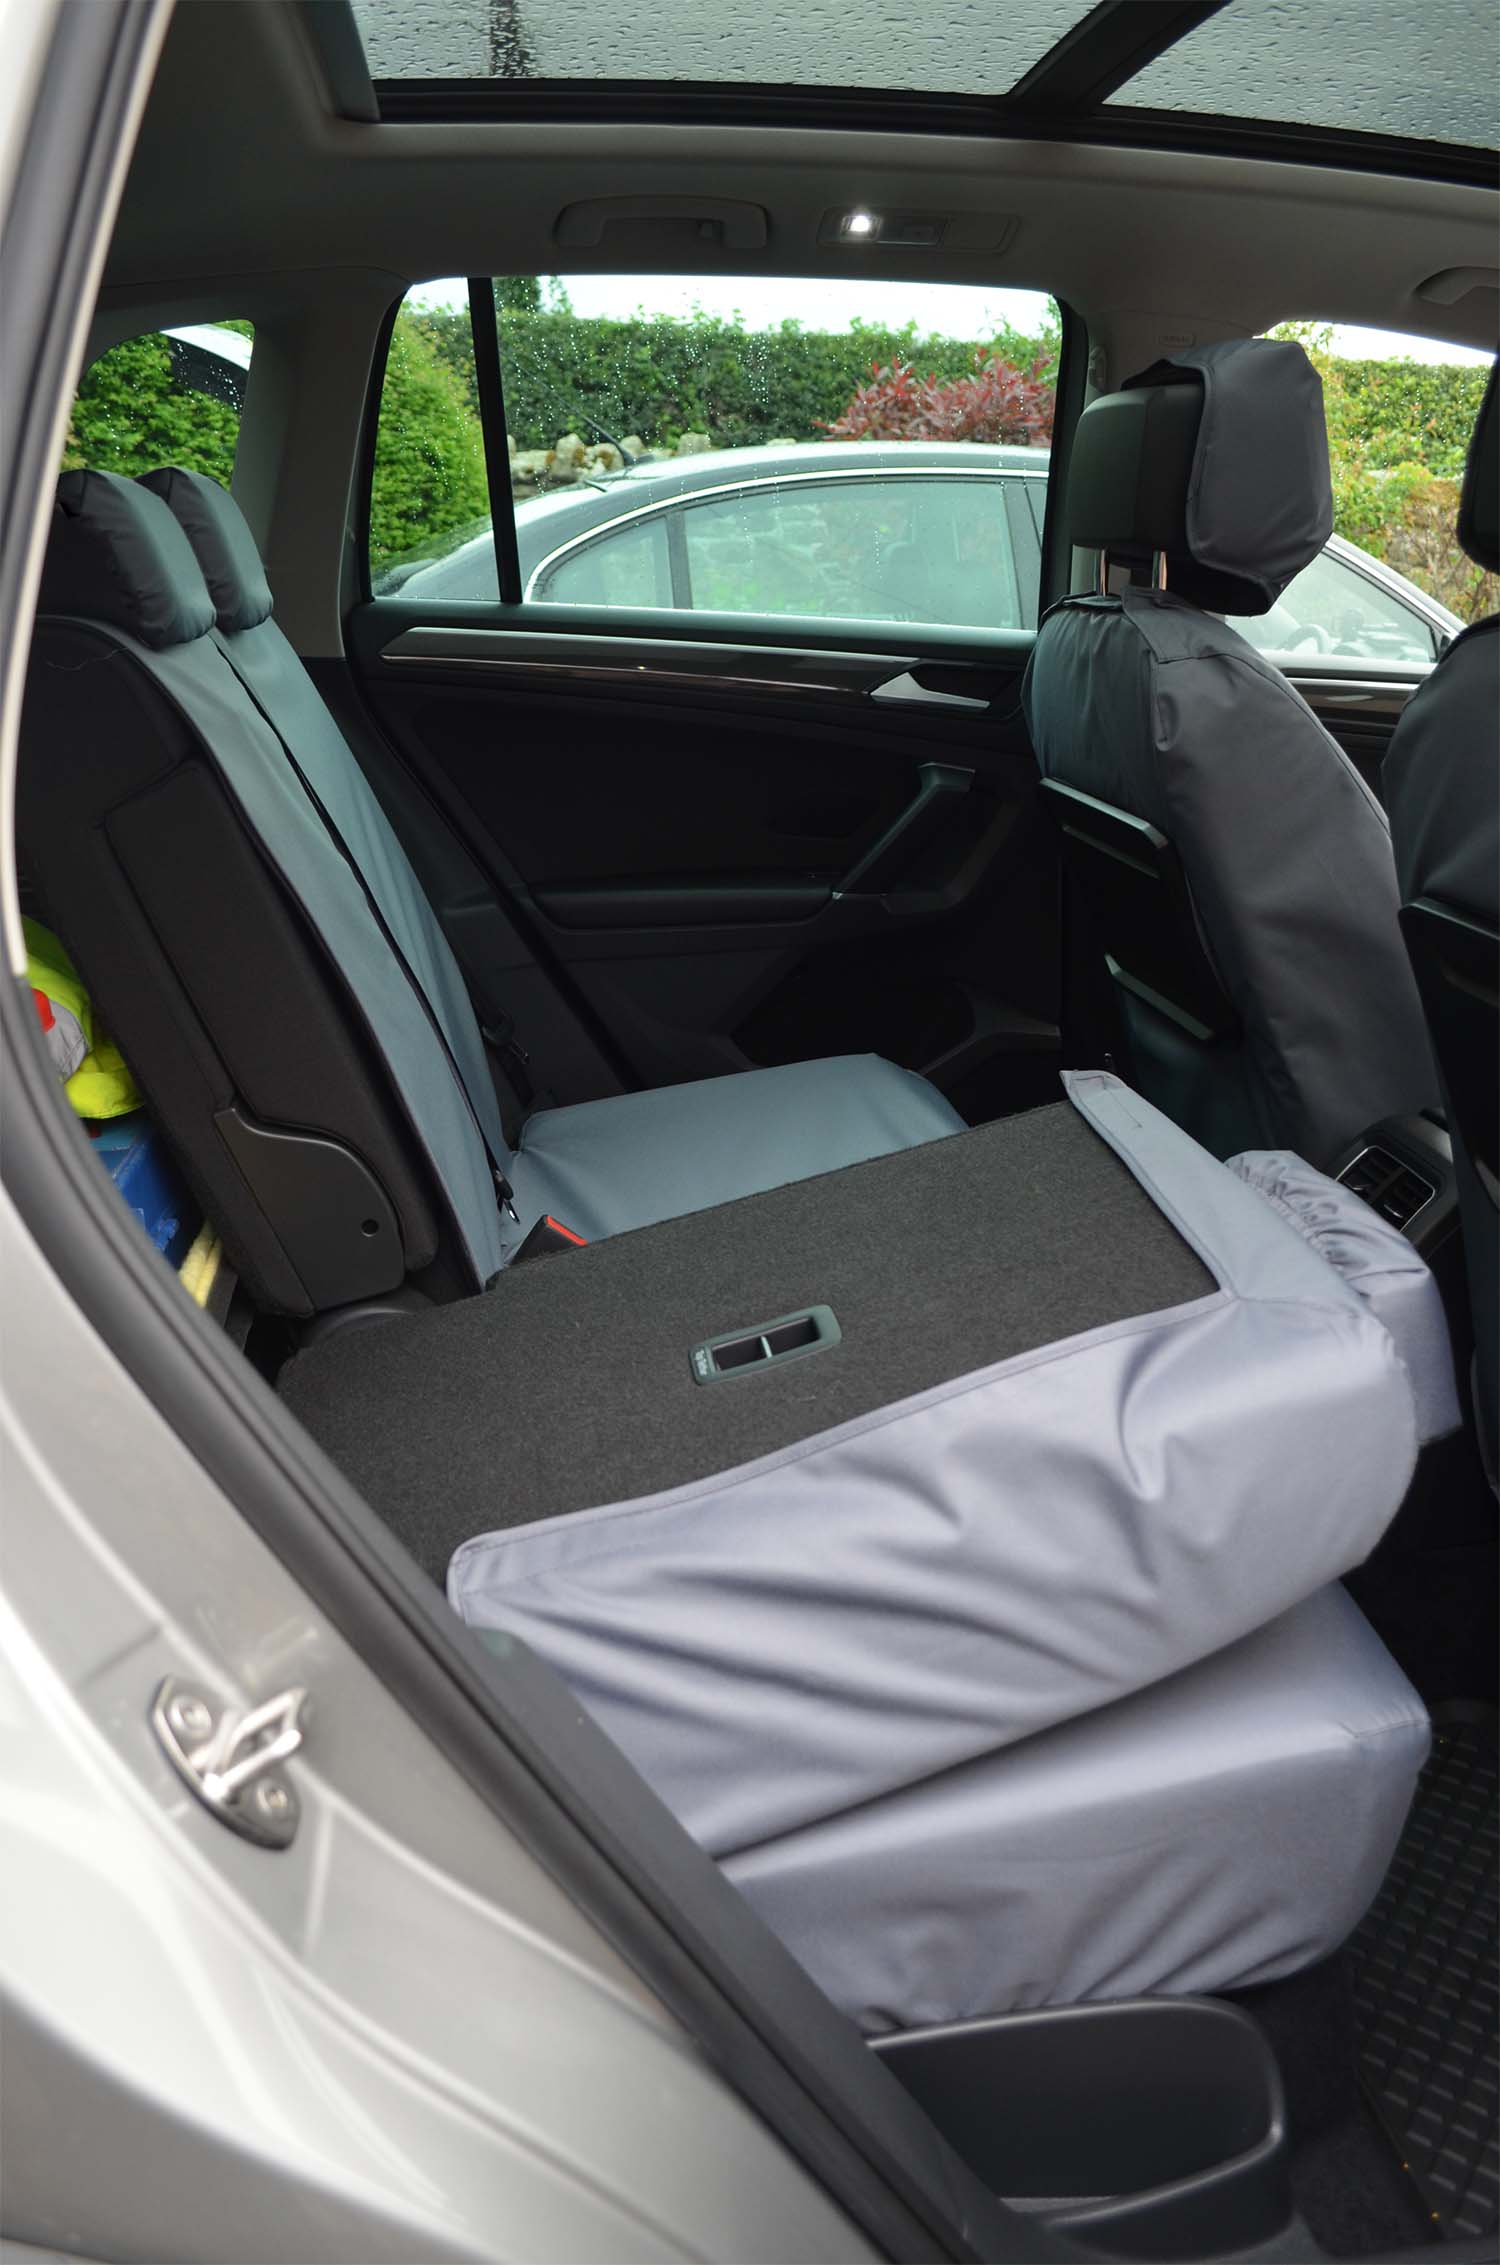 VW Volkswagen Tiguan 2016+ Seat Covers